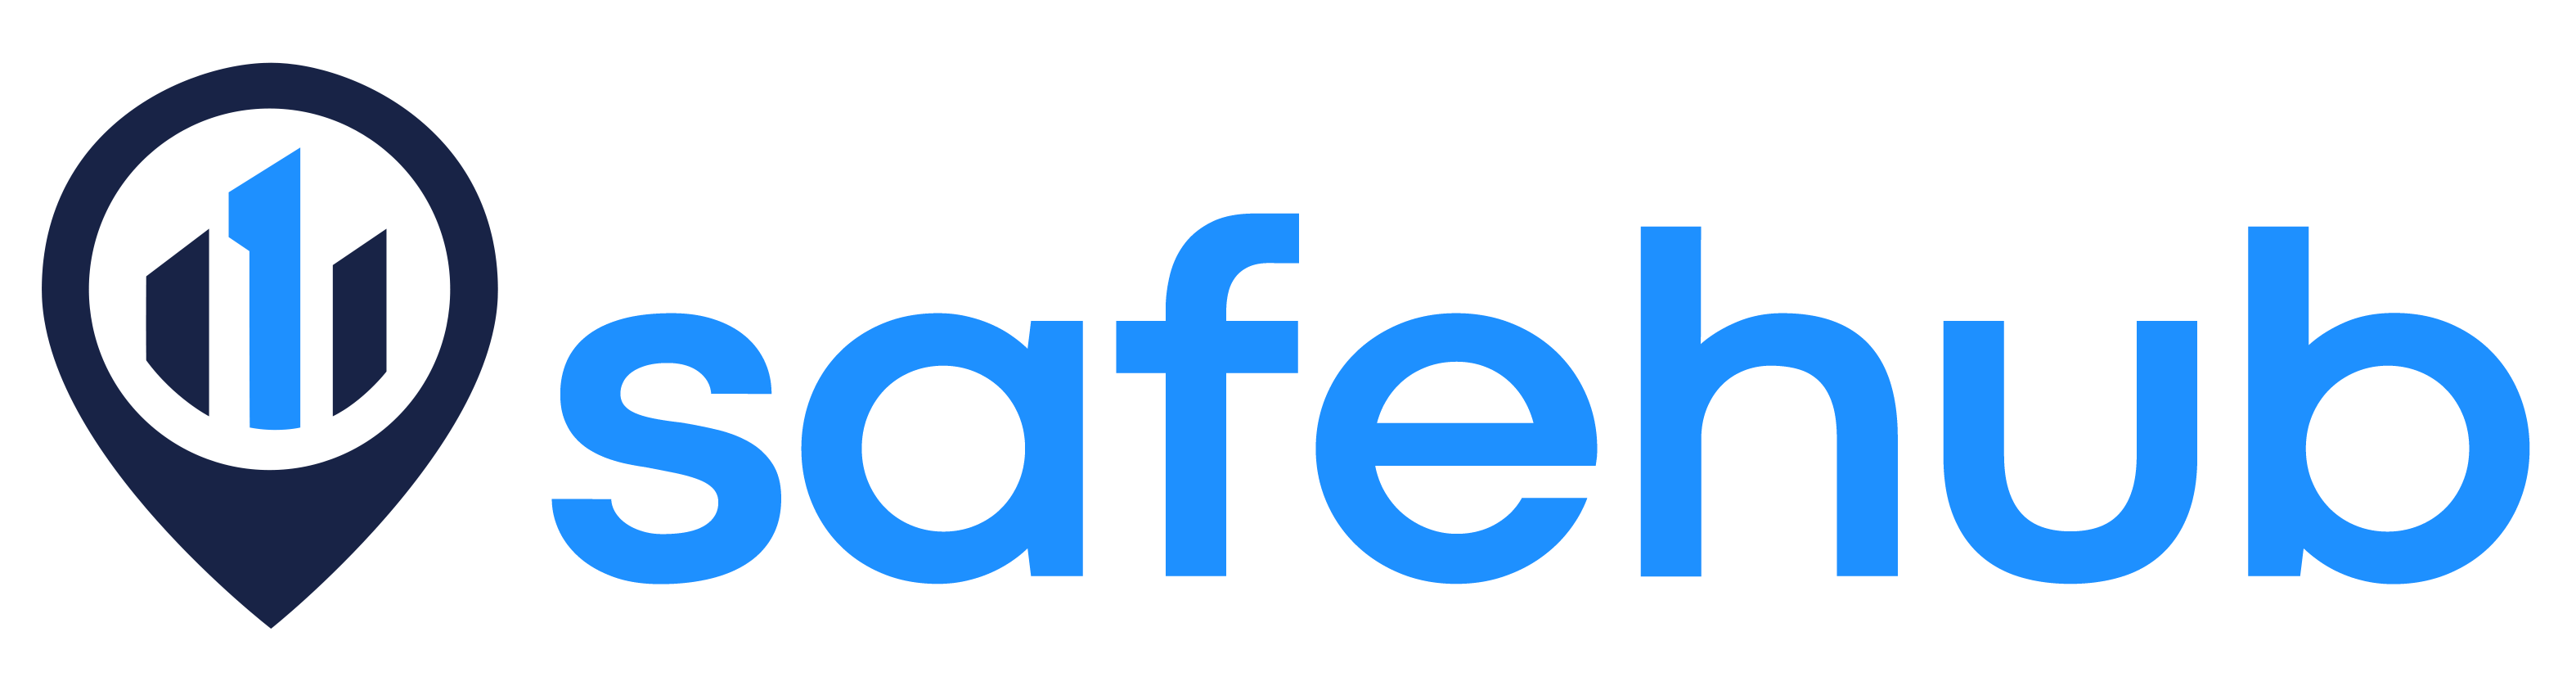 Safehub_Logo_Cropped.png